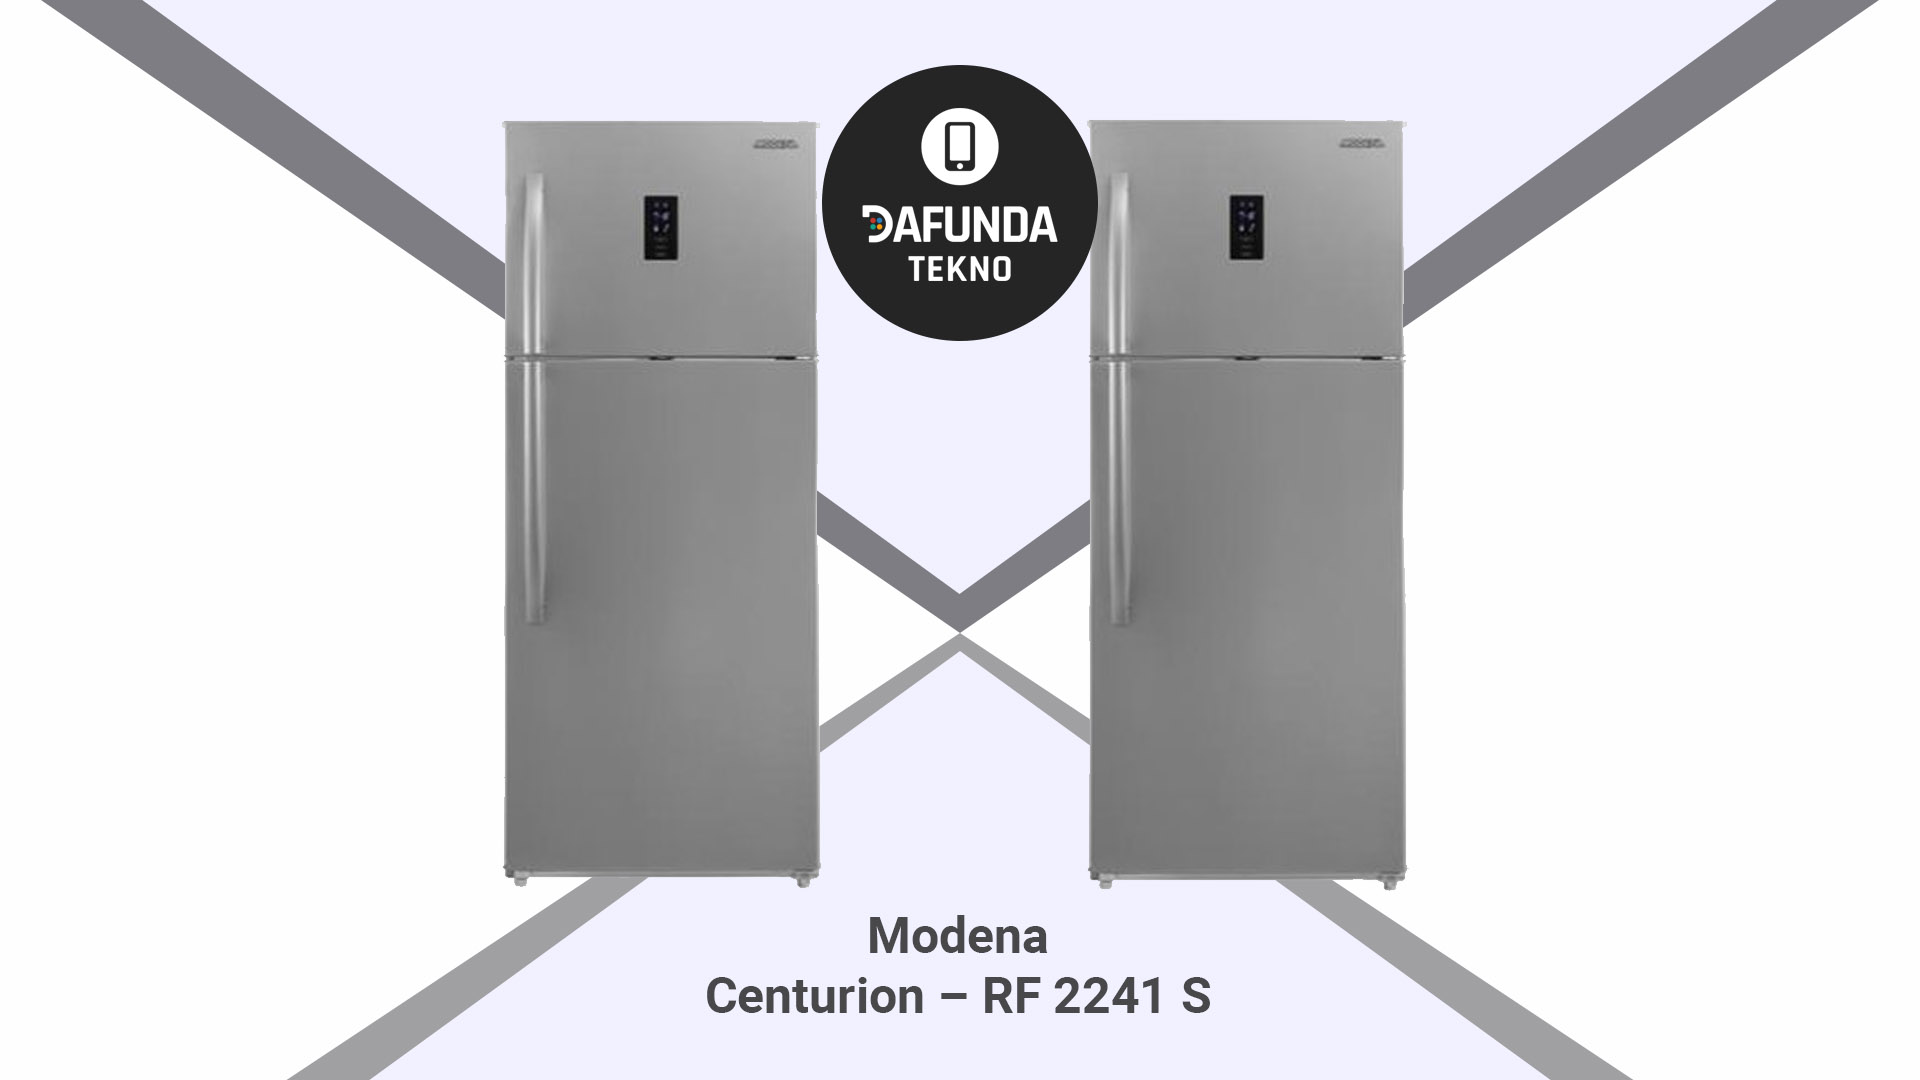 Modena Centurion – Rf 2241 S